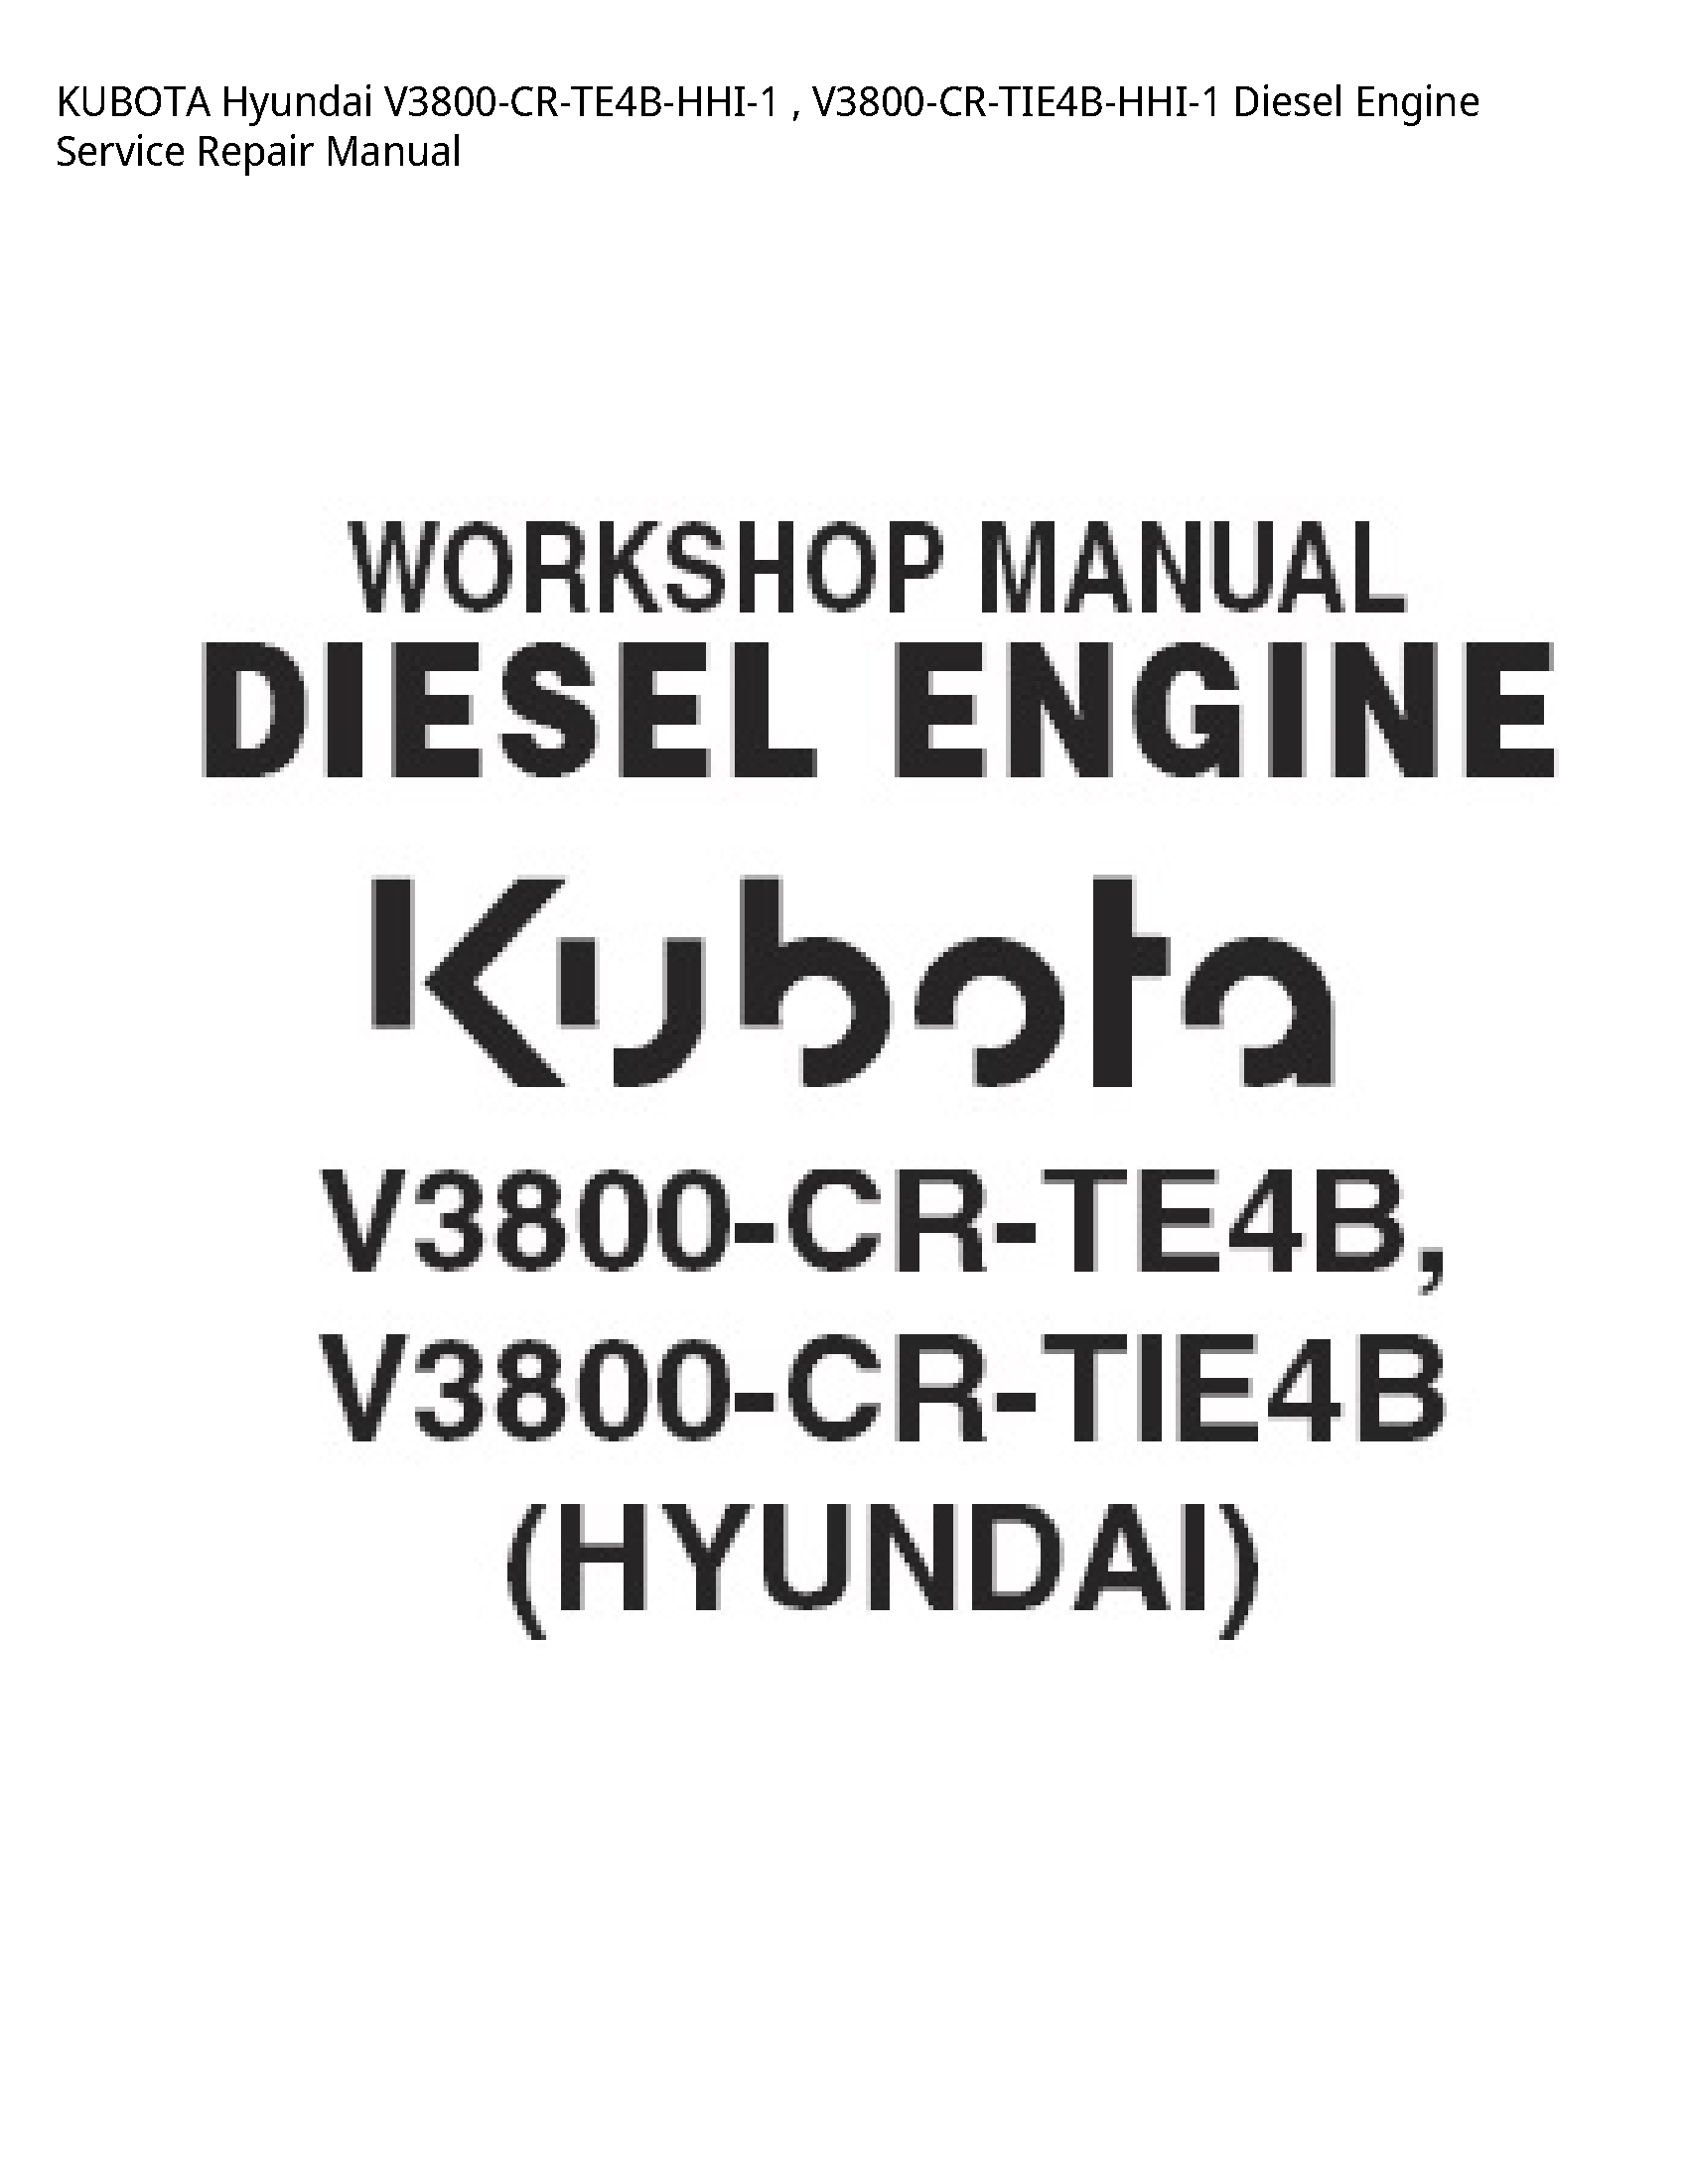 Kubota V3800-CR-TE4B-HHI-1 Hyundai Diesel Engine manual